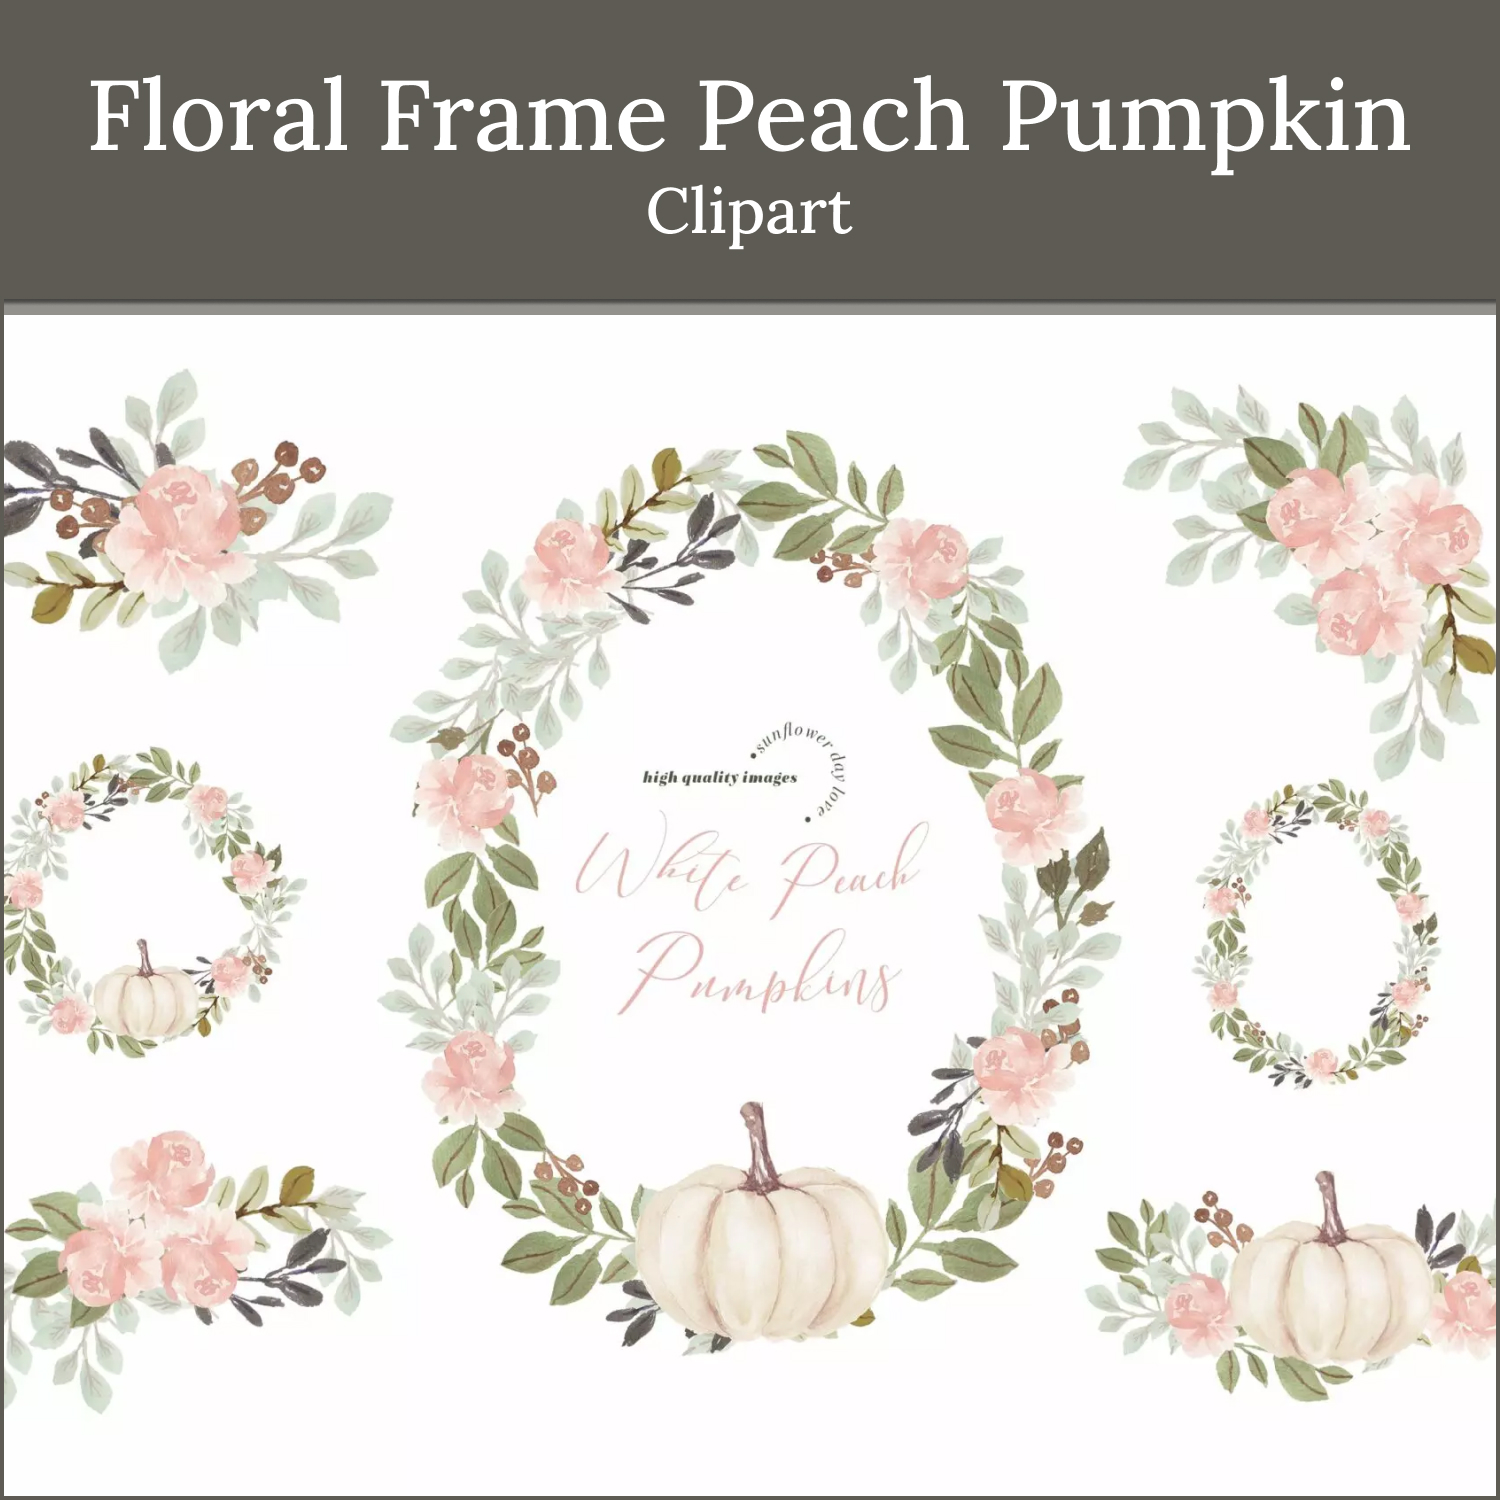 Prints of floral frame peach pumpkin clipart.